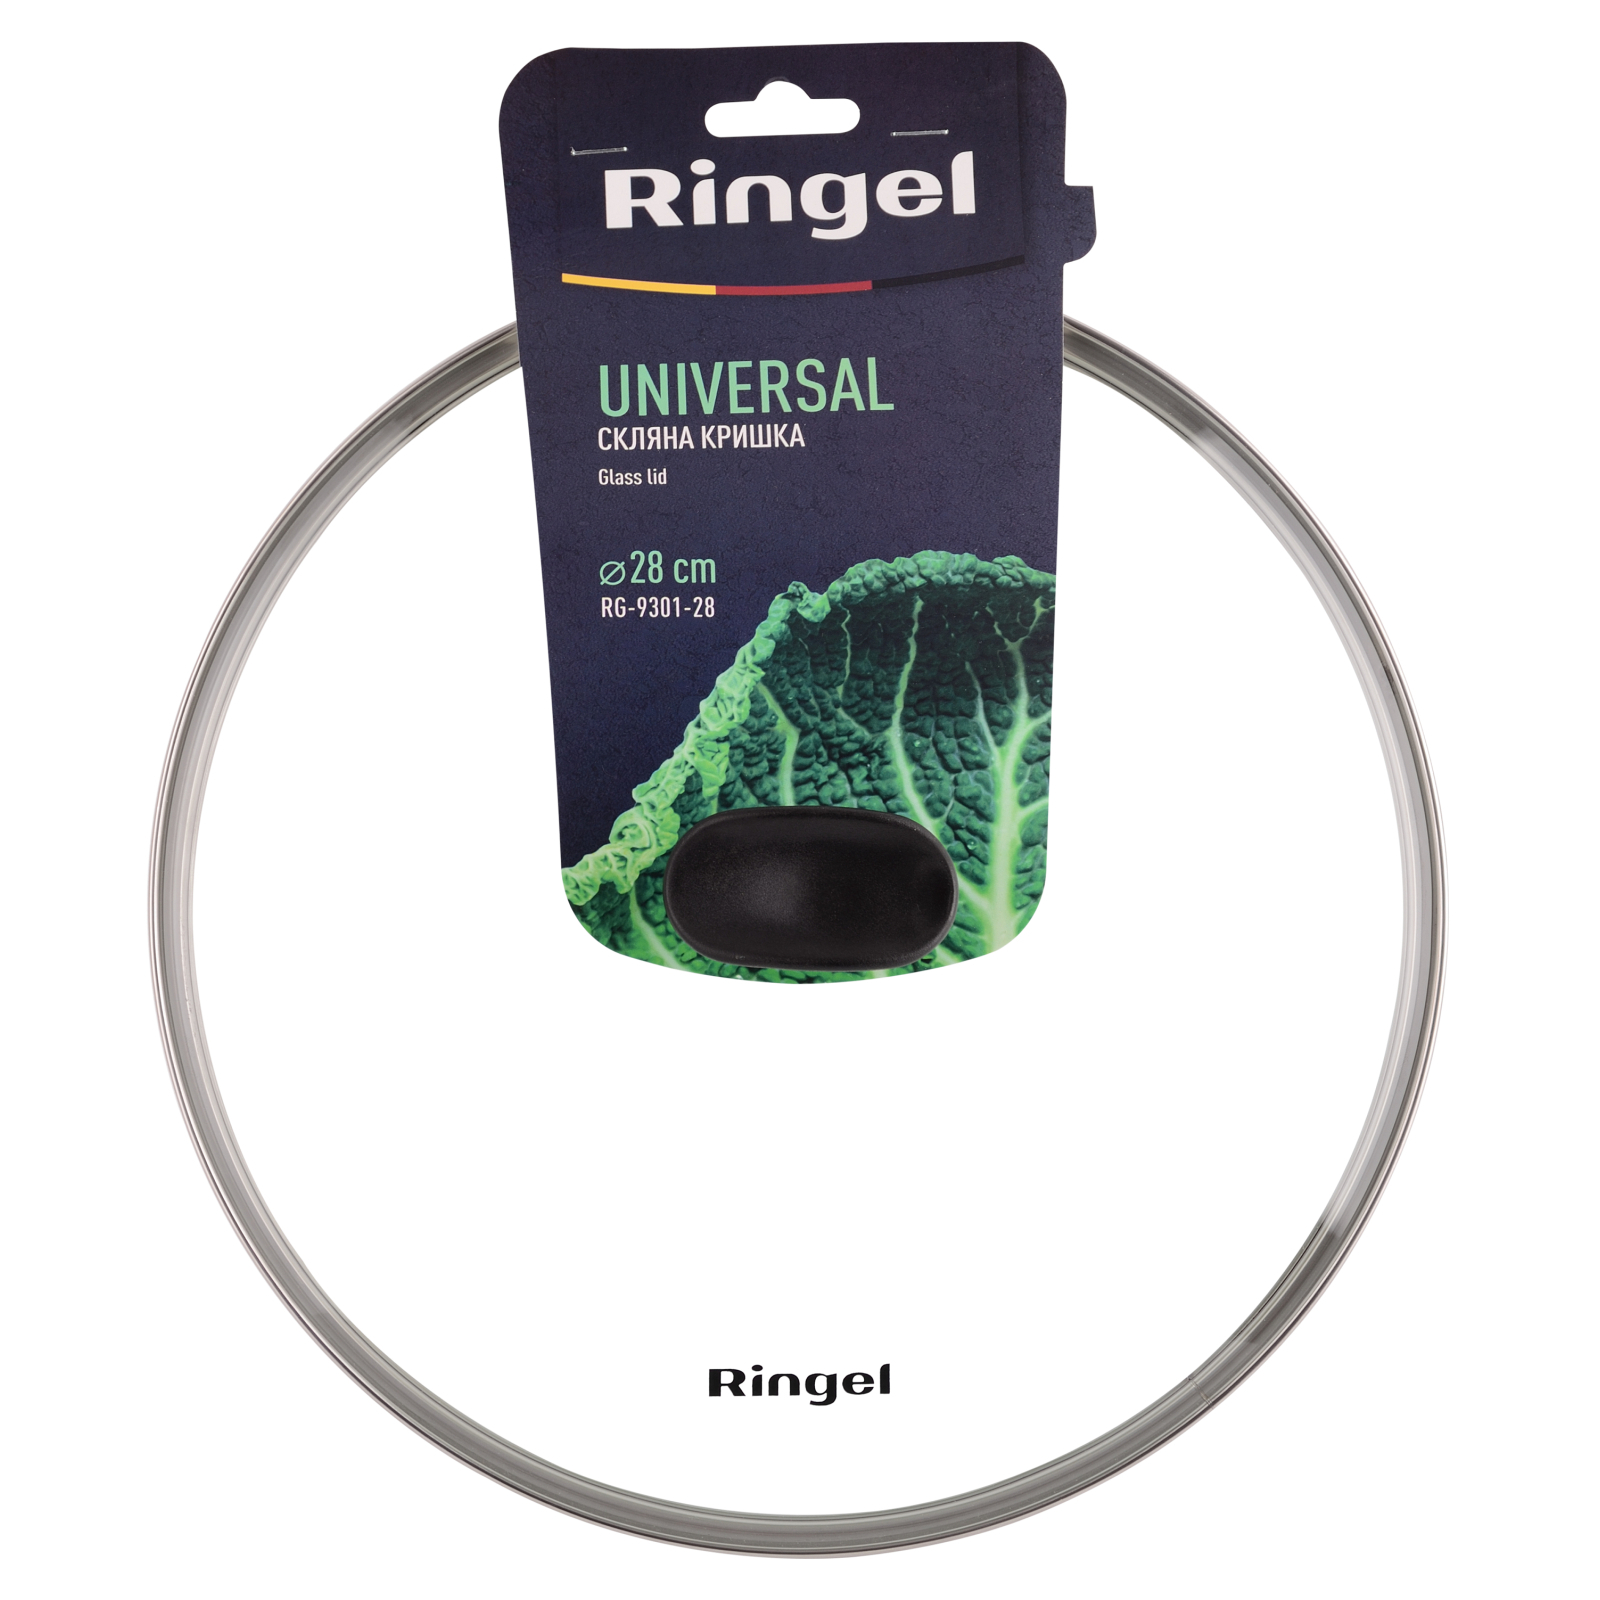 Крышка для посуды Ringel Universal 26 см (RG-9301-26) изображение 4